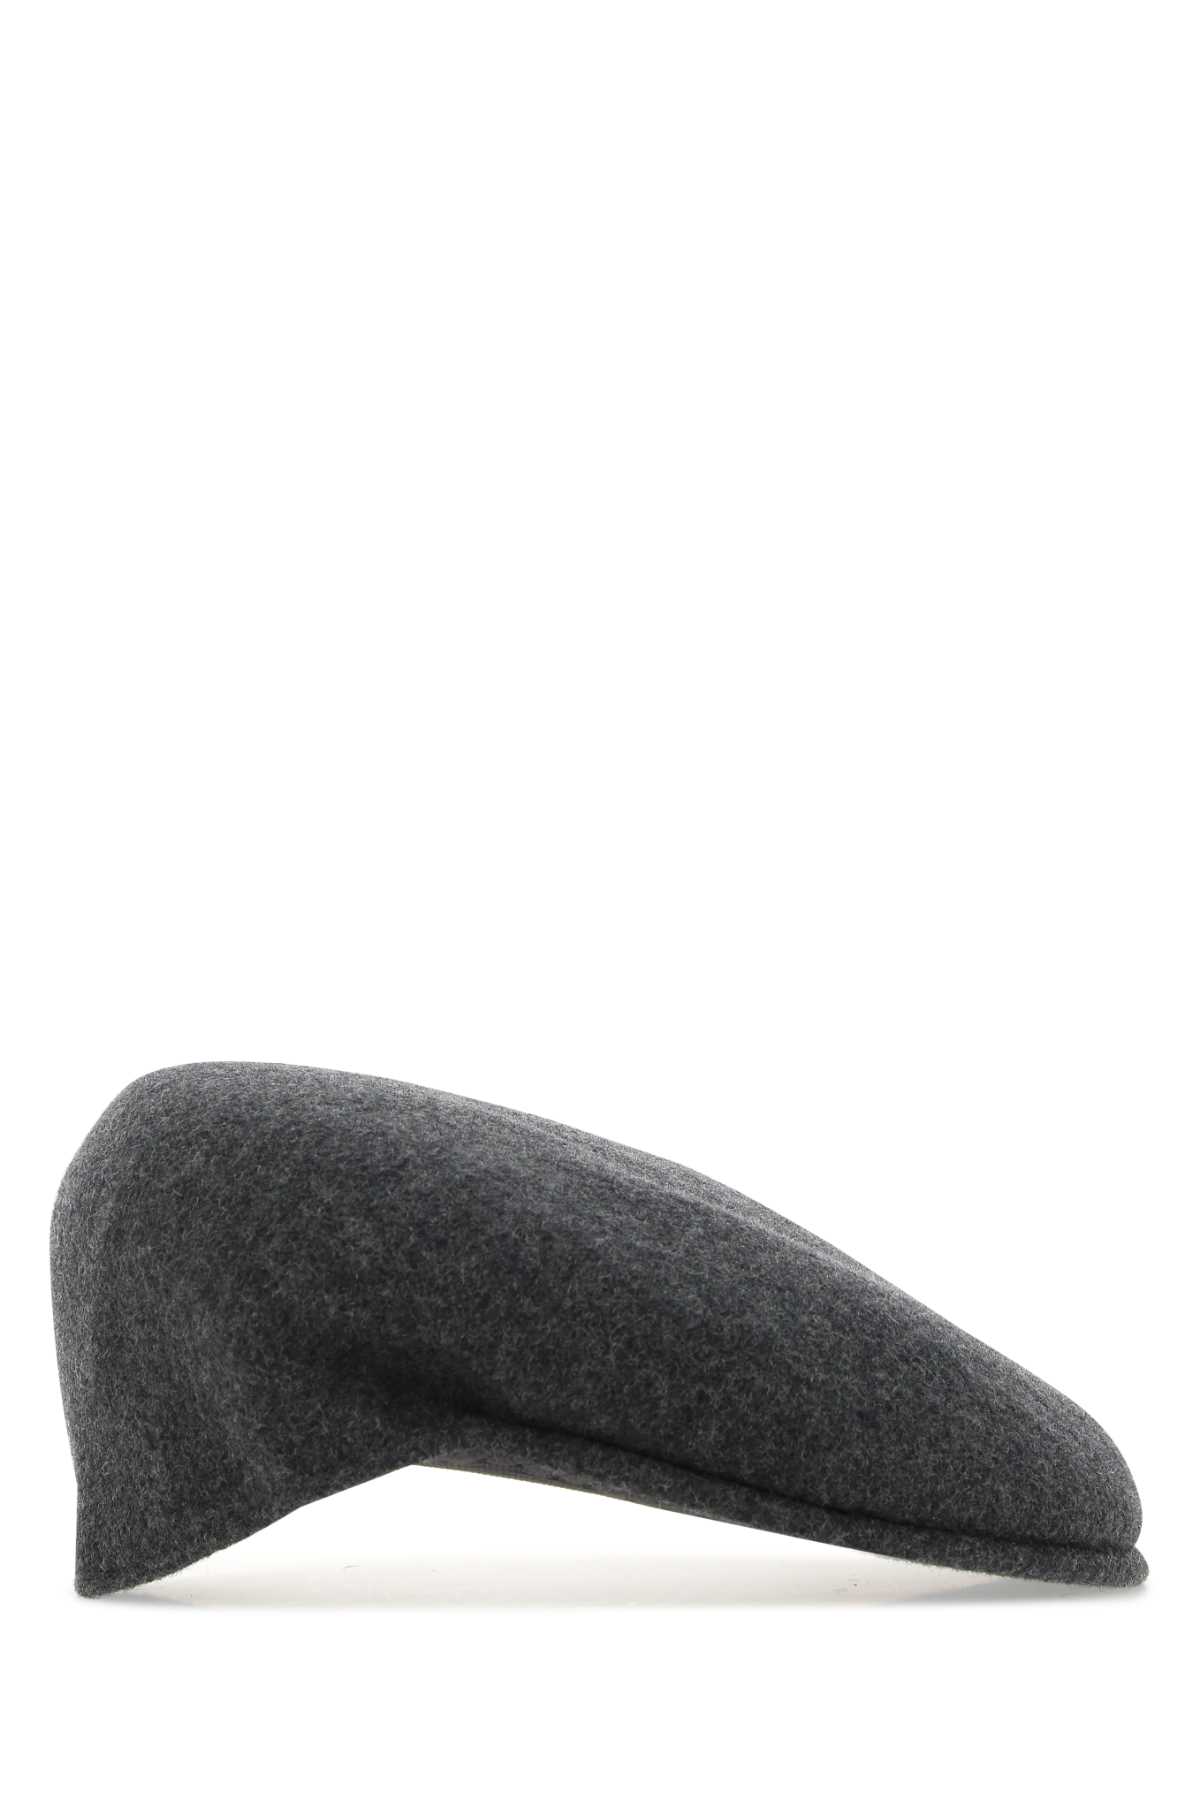 Kangol Melange Grey Felt Baker Boy Hat In Df026